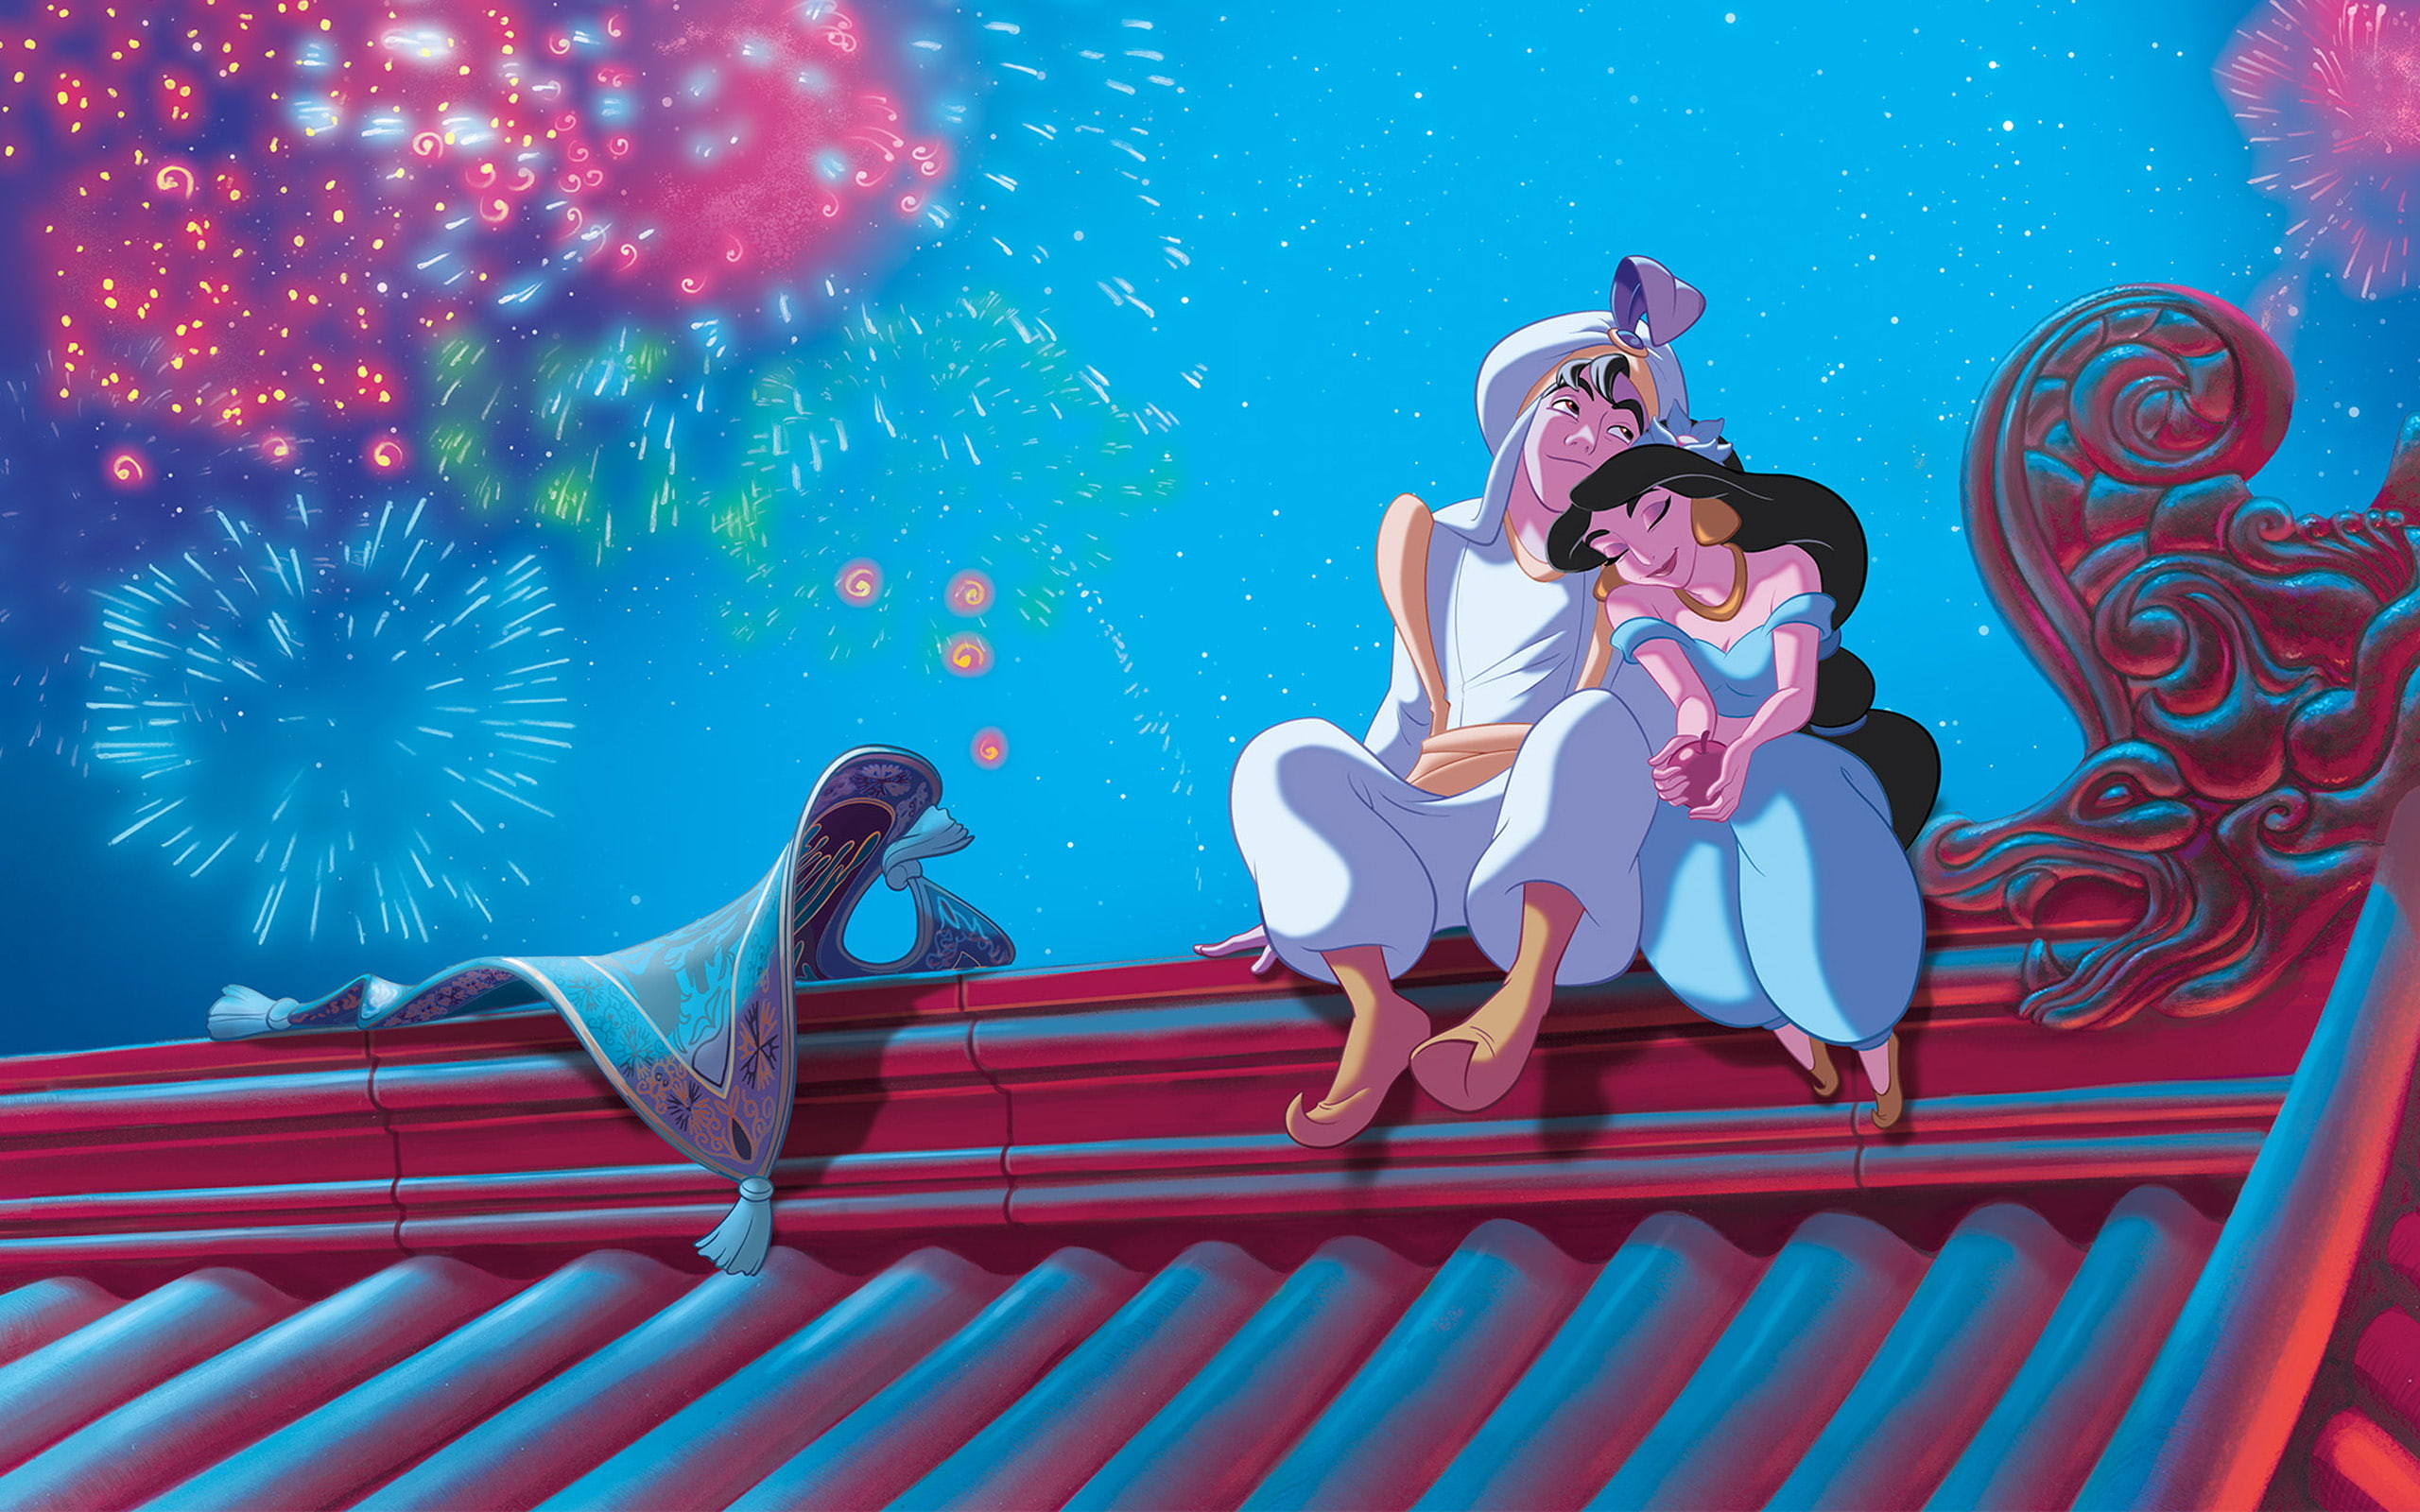 2560x1600 HD wallpaper: Disney Aladdin and Jasmin wallpaper, jasmine, sultan, flight  | Wallpaper Flare